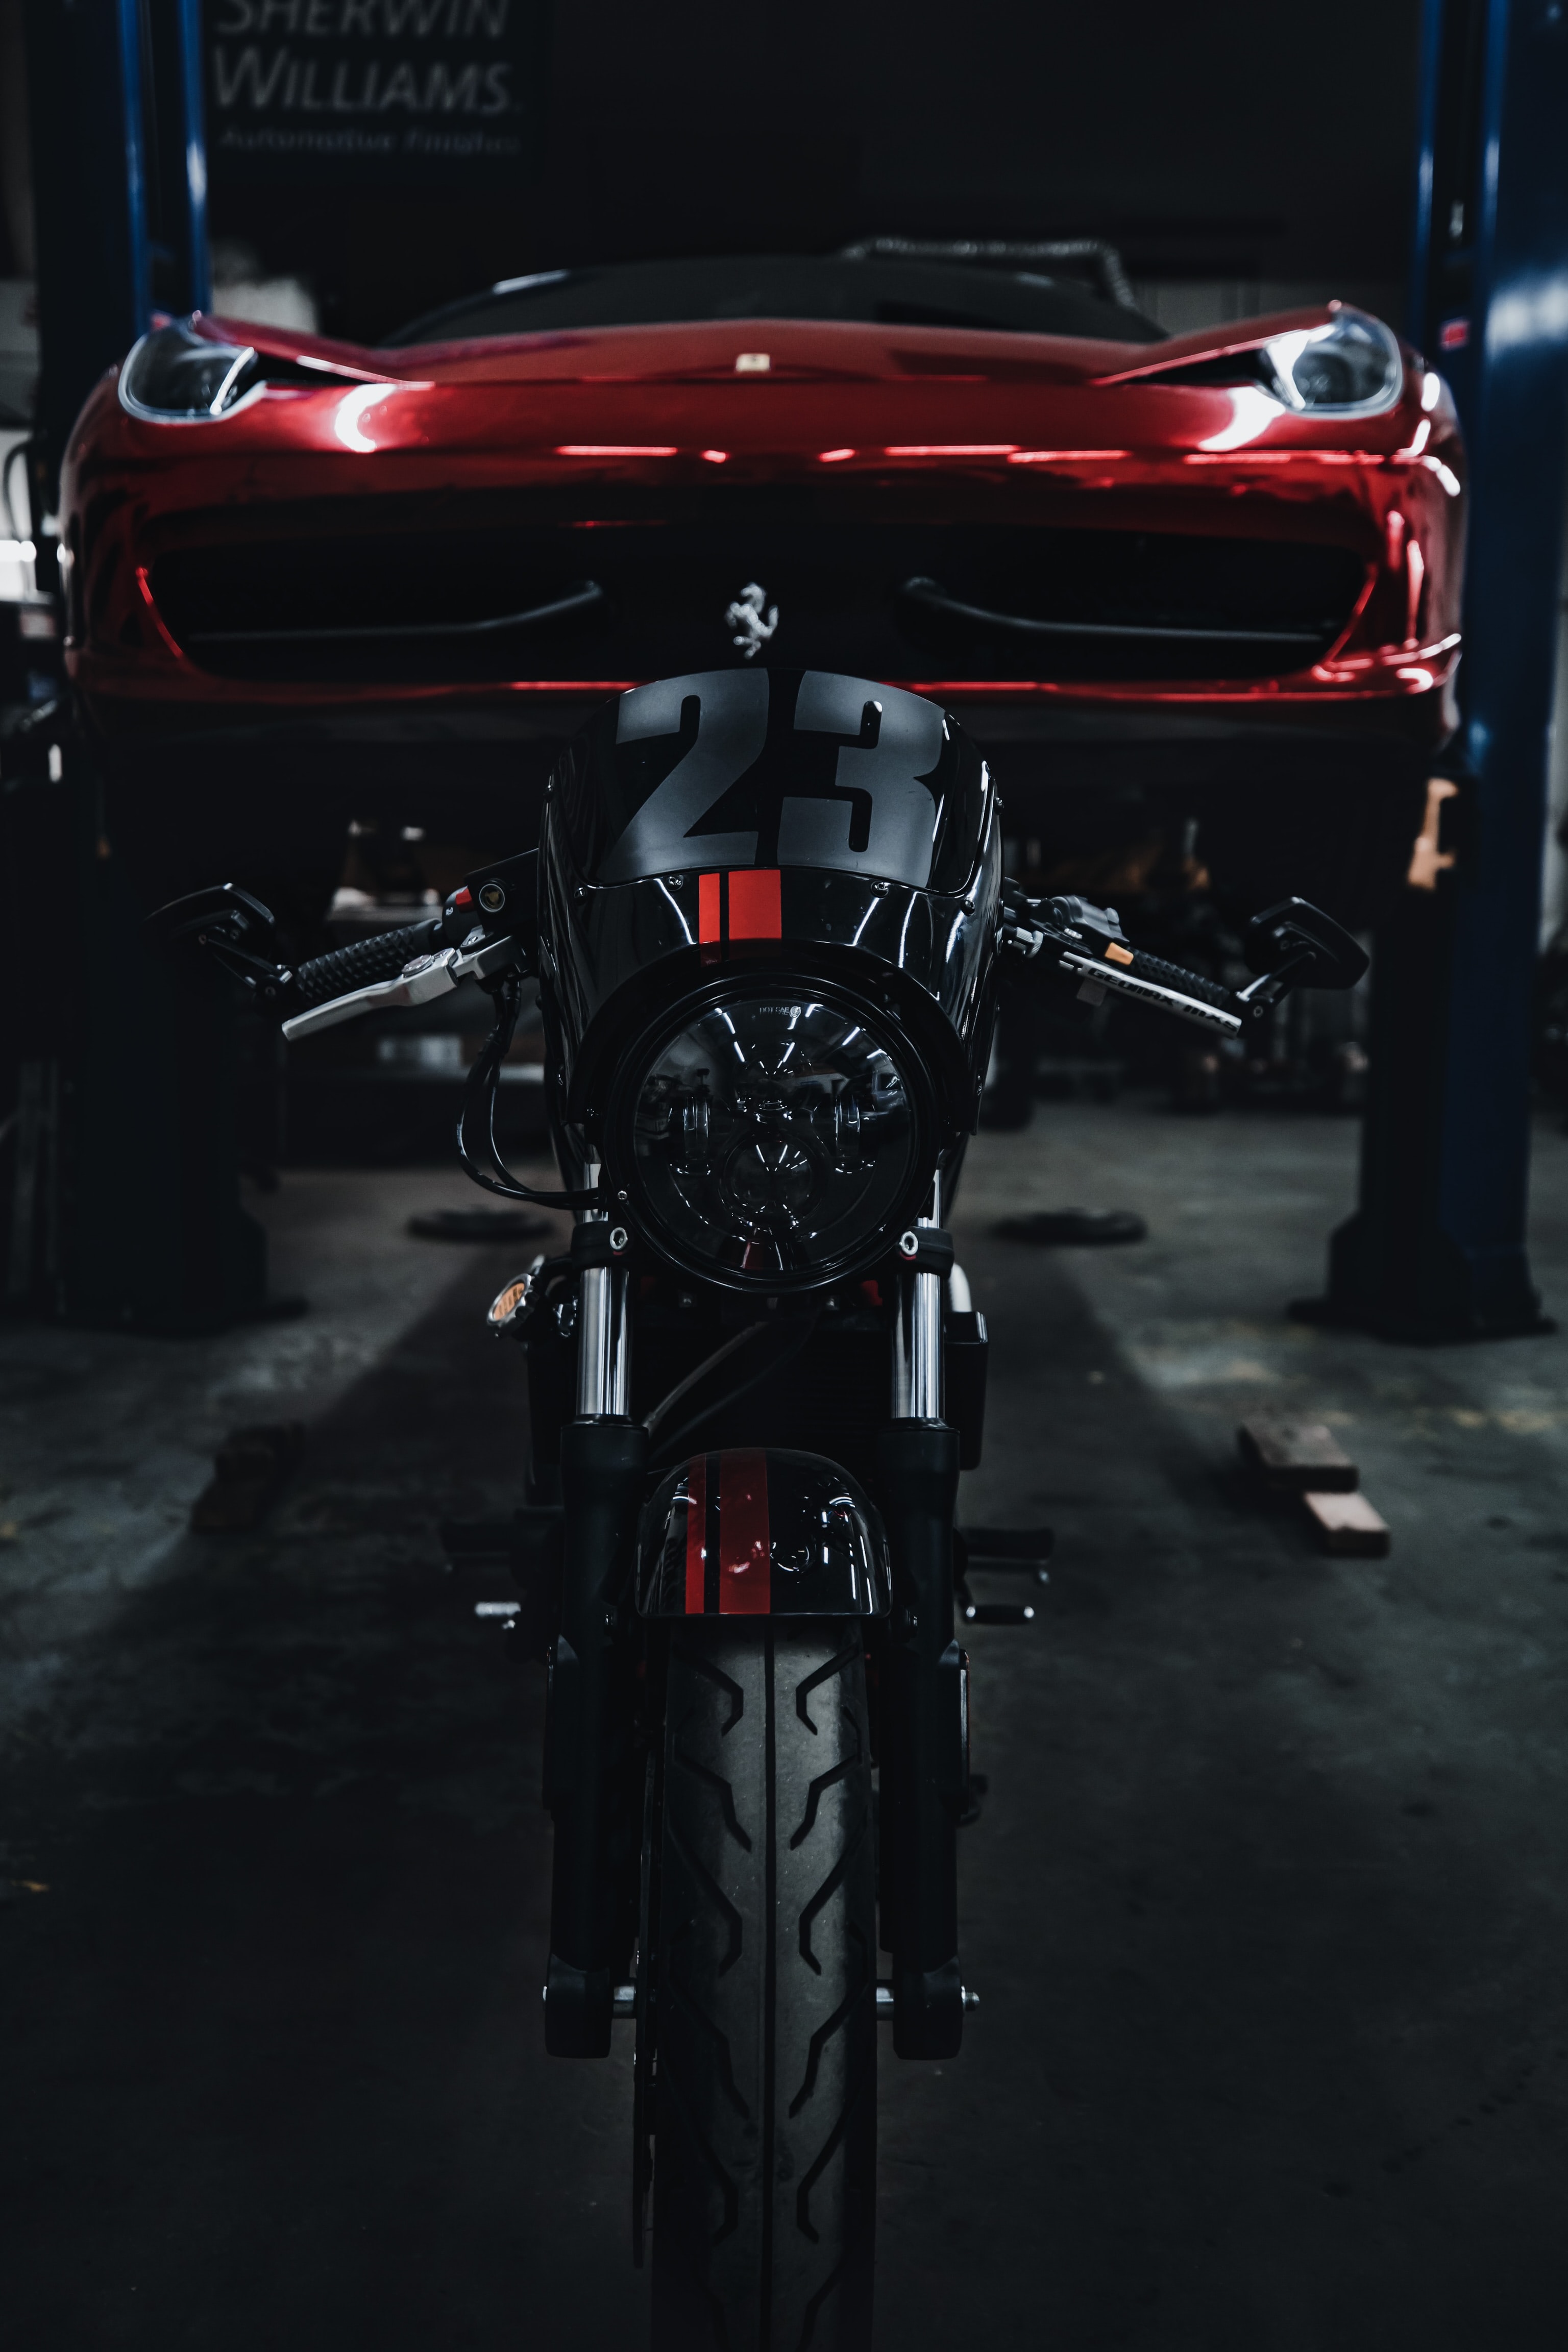 bike, motorcycles, black, red, car, motorcycle